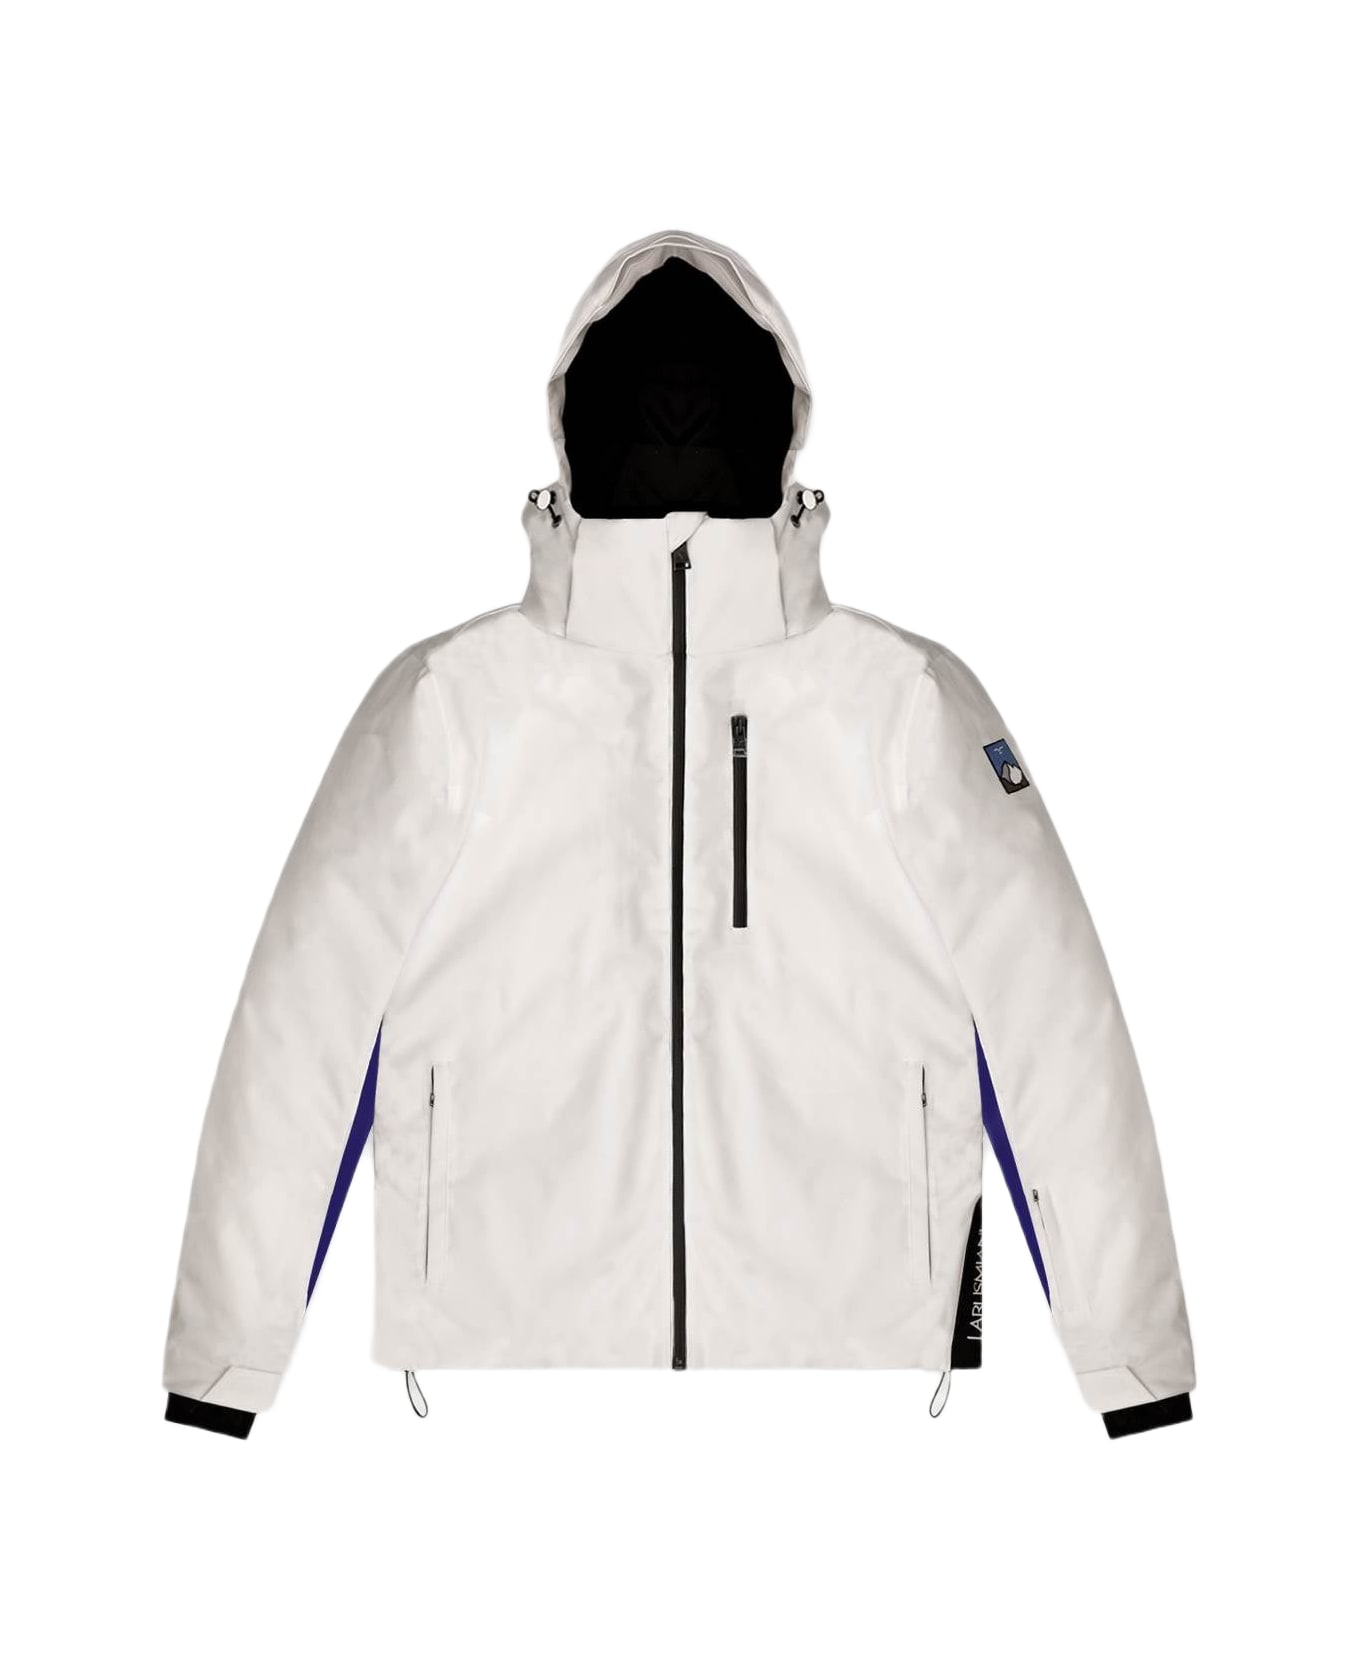 Larusmiani Ski Jacket Jacket - White ジャケット